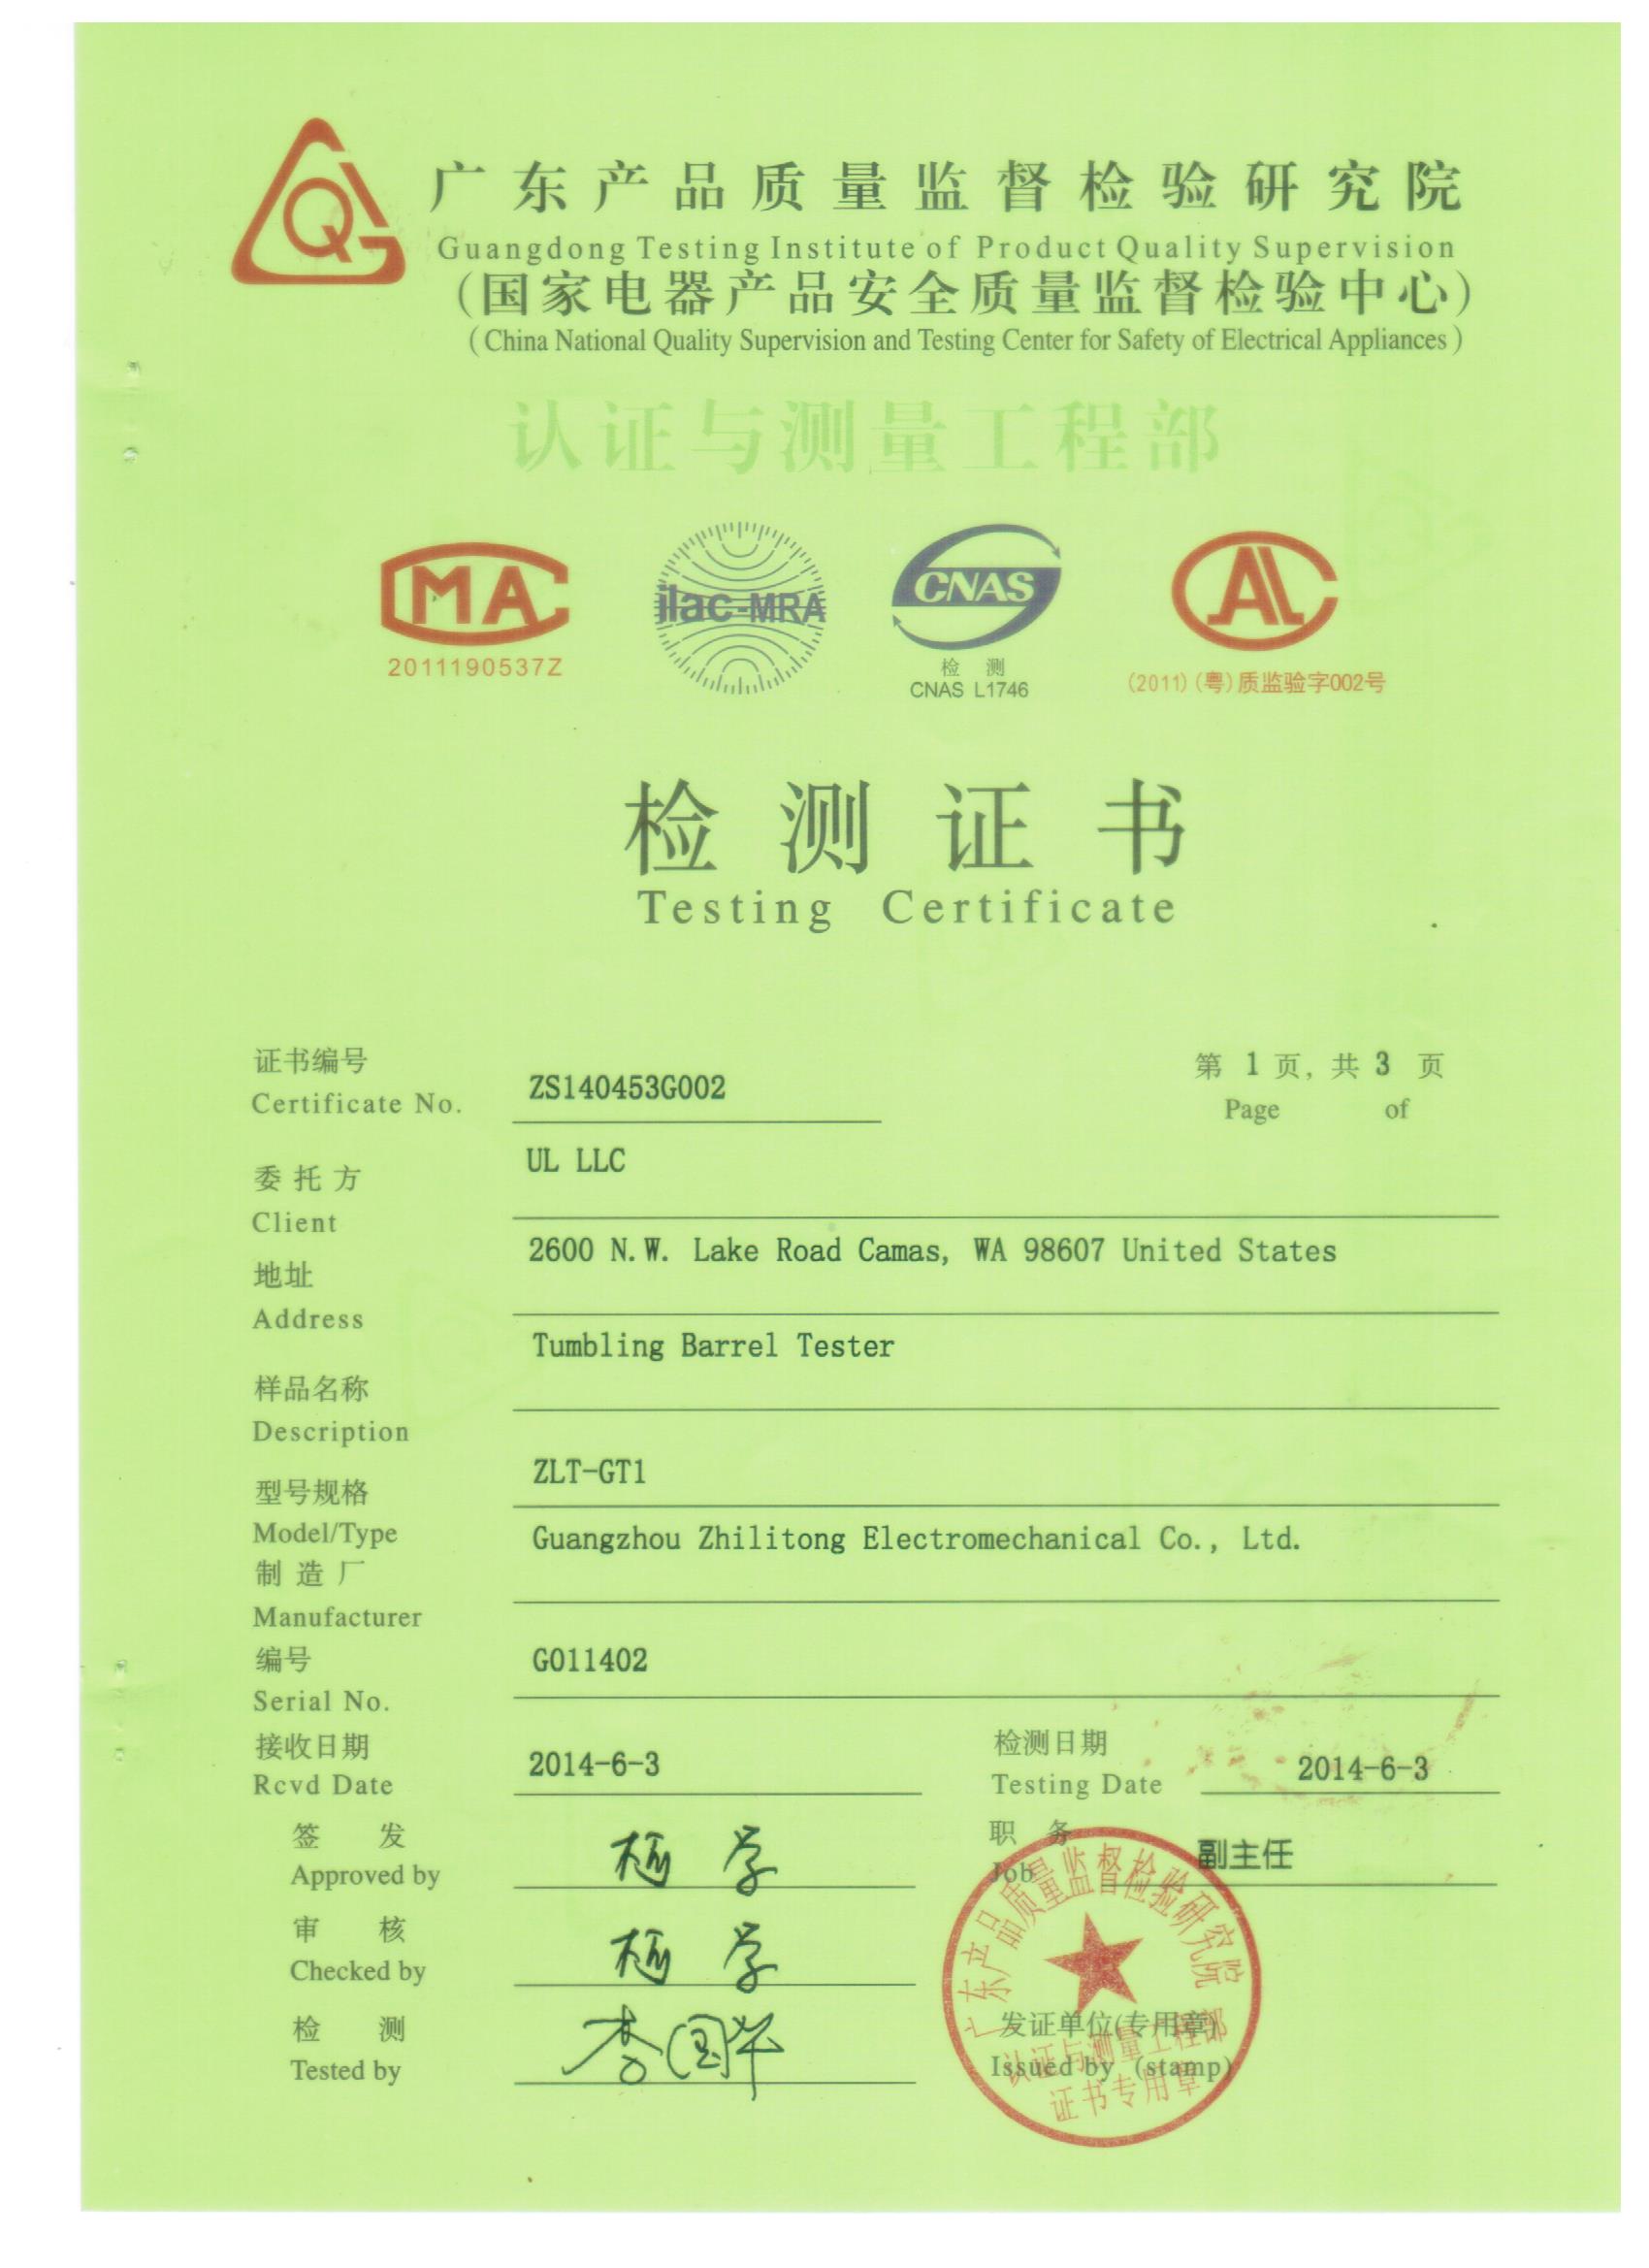 Certificate of Tumbling Barrel Tester